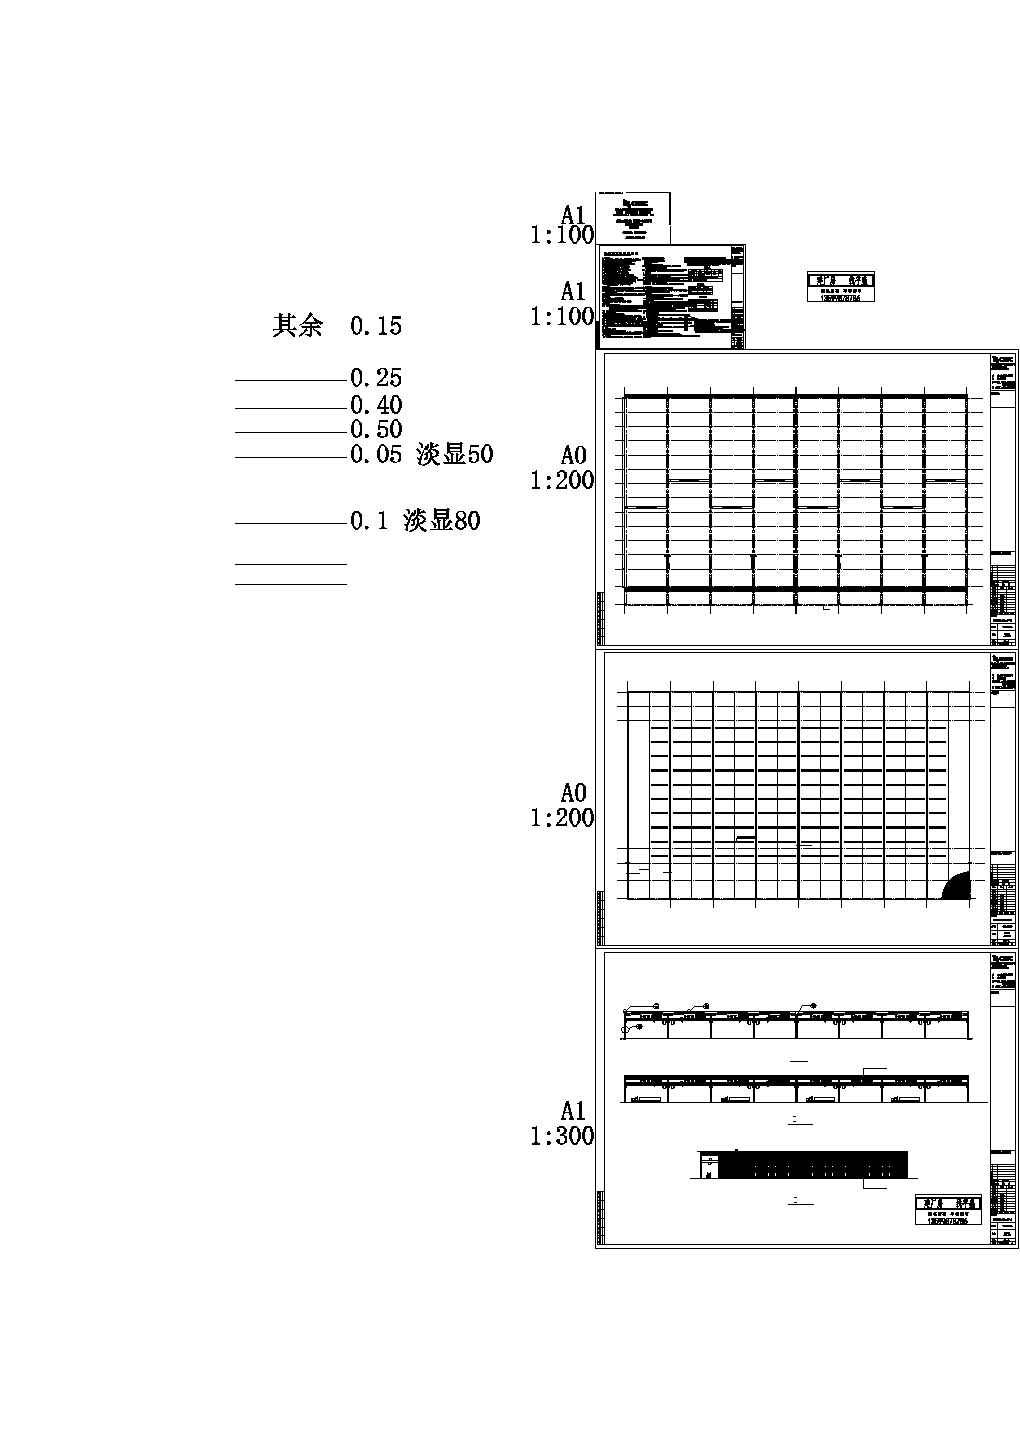 成都某公司钢铁物流B区仓储设计施工CAD图